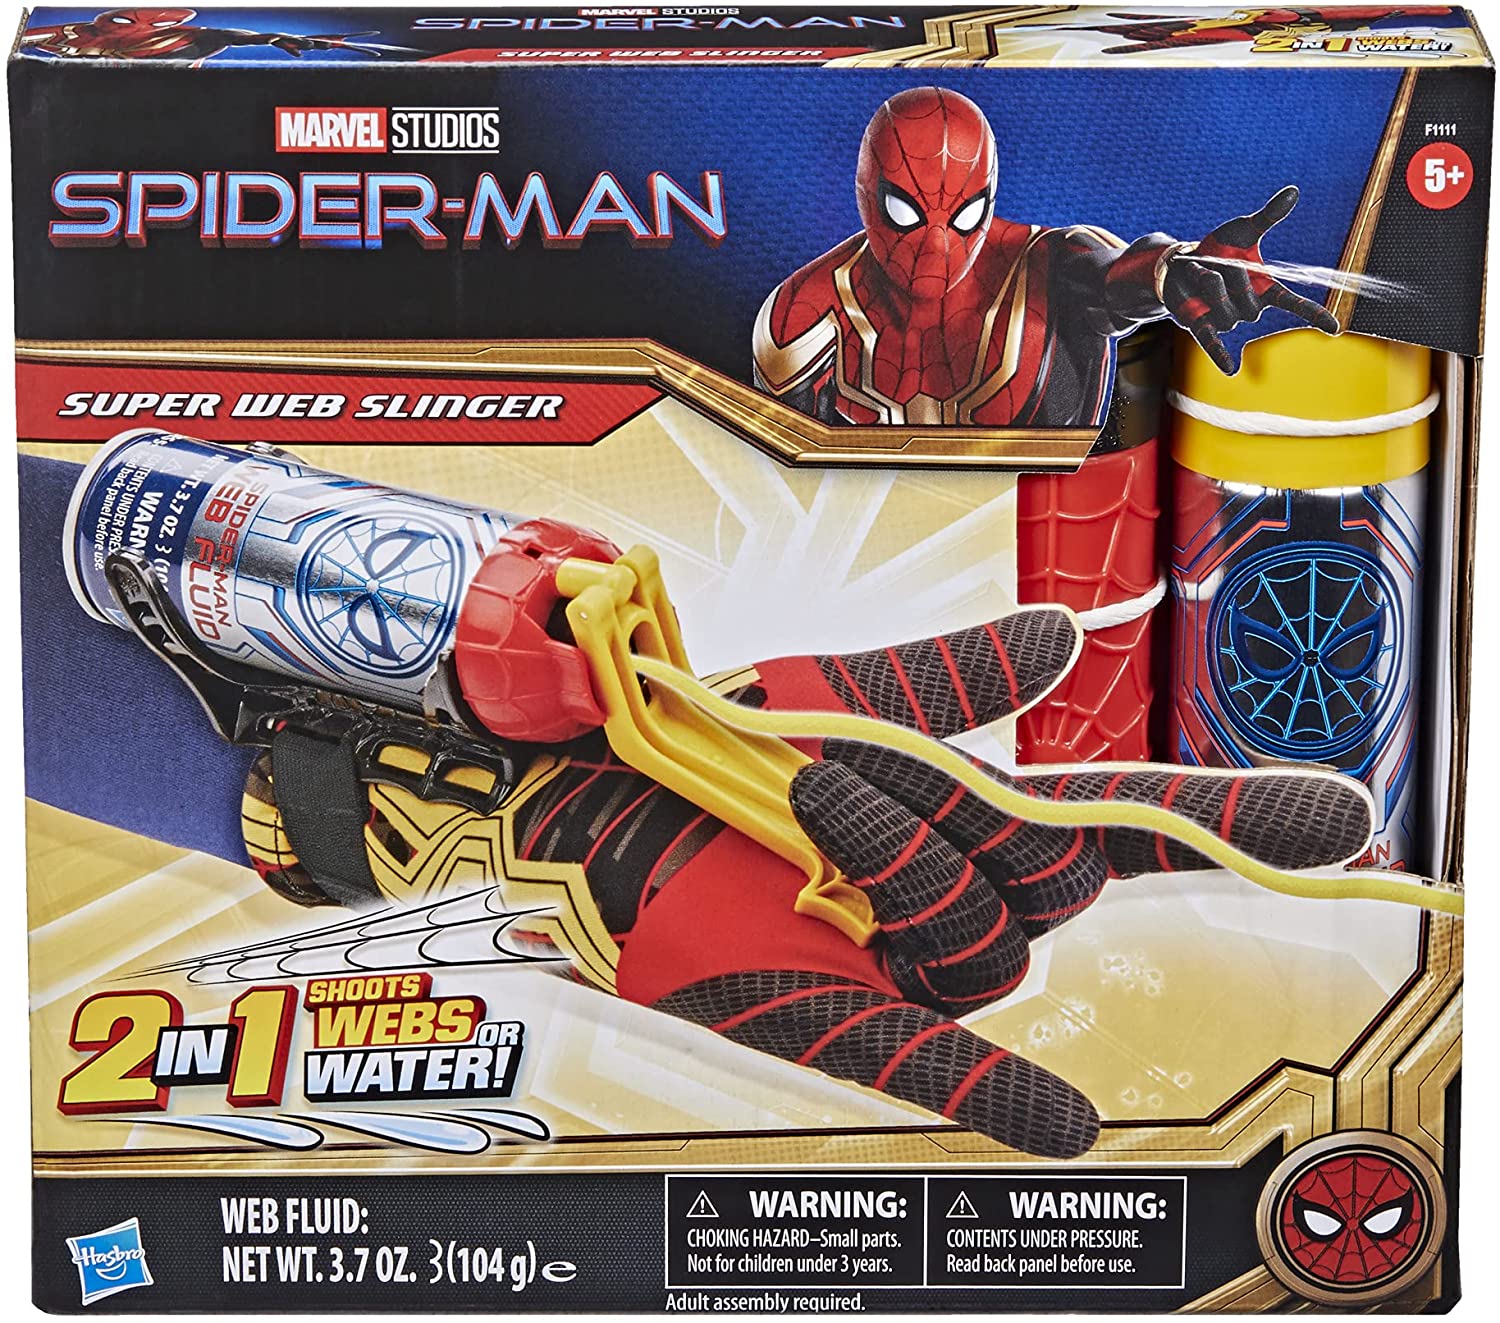 Gants Spider Hero en Plastique, 2 Set Super Spider Launcher